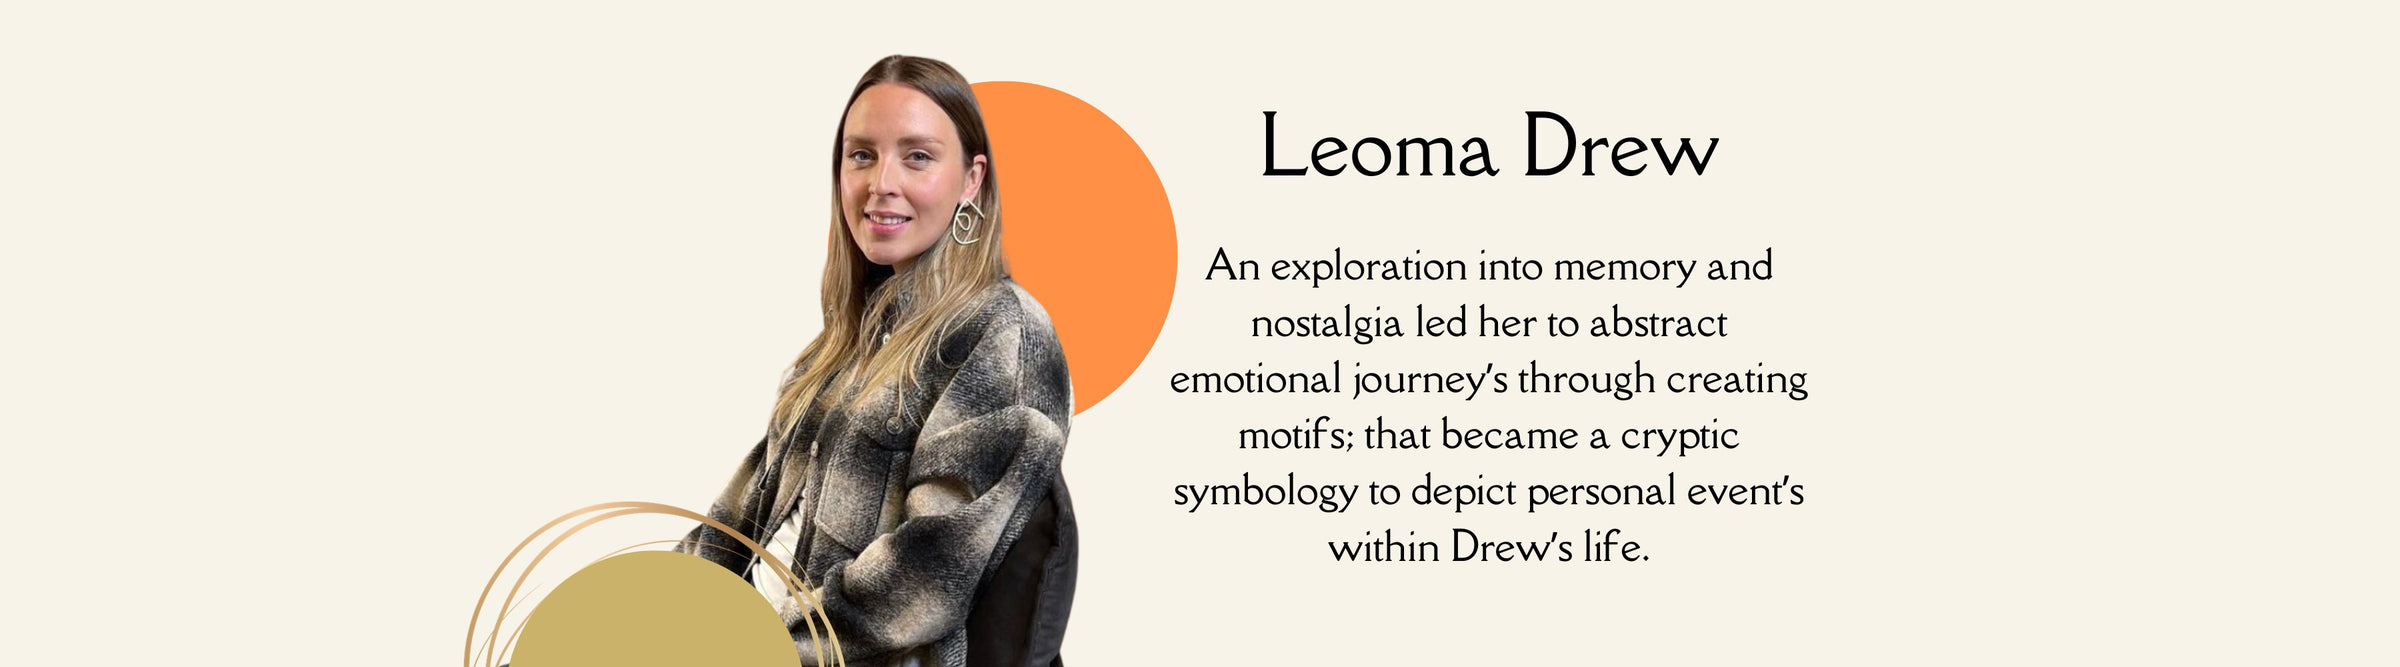 Leoma Drew